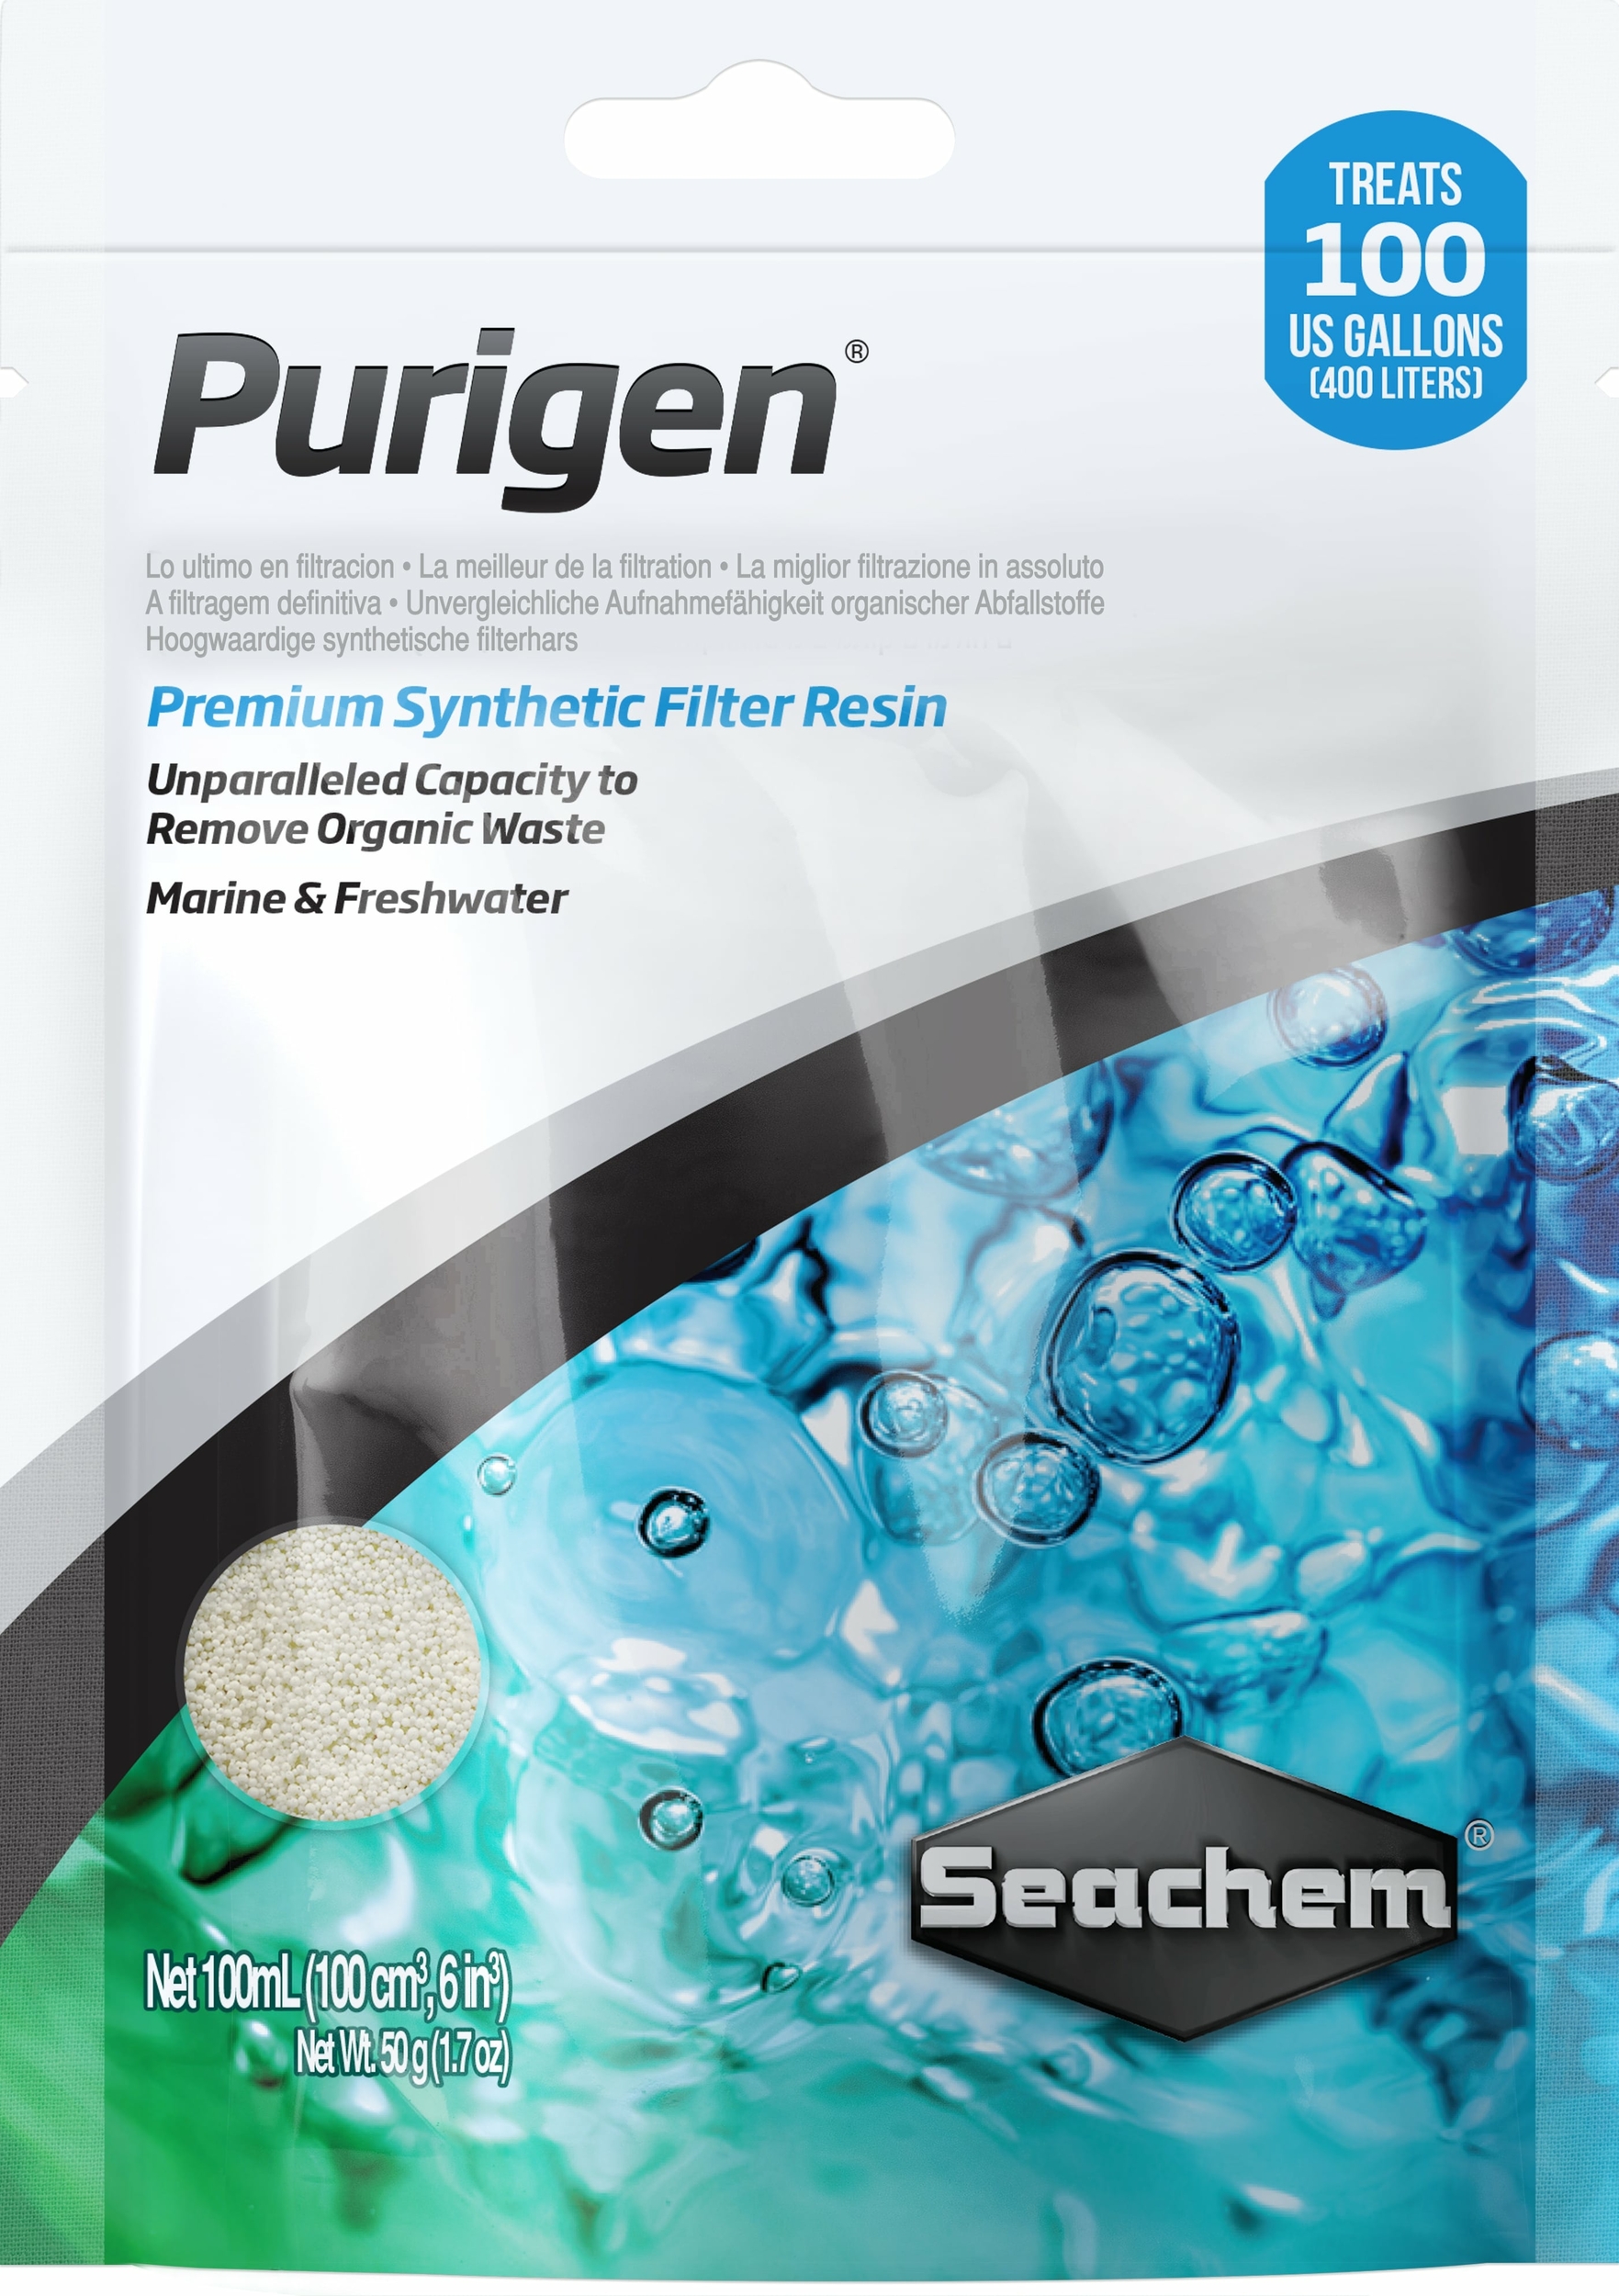 seachem-purigen-100-ml-masse-de-filtration-synthetique-absorbant-les-mauvaises-substances-dans-l-eau-de-l-aquarium